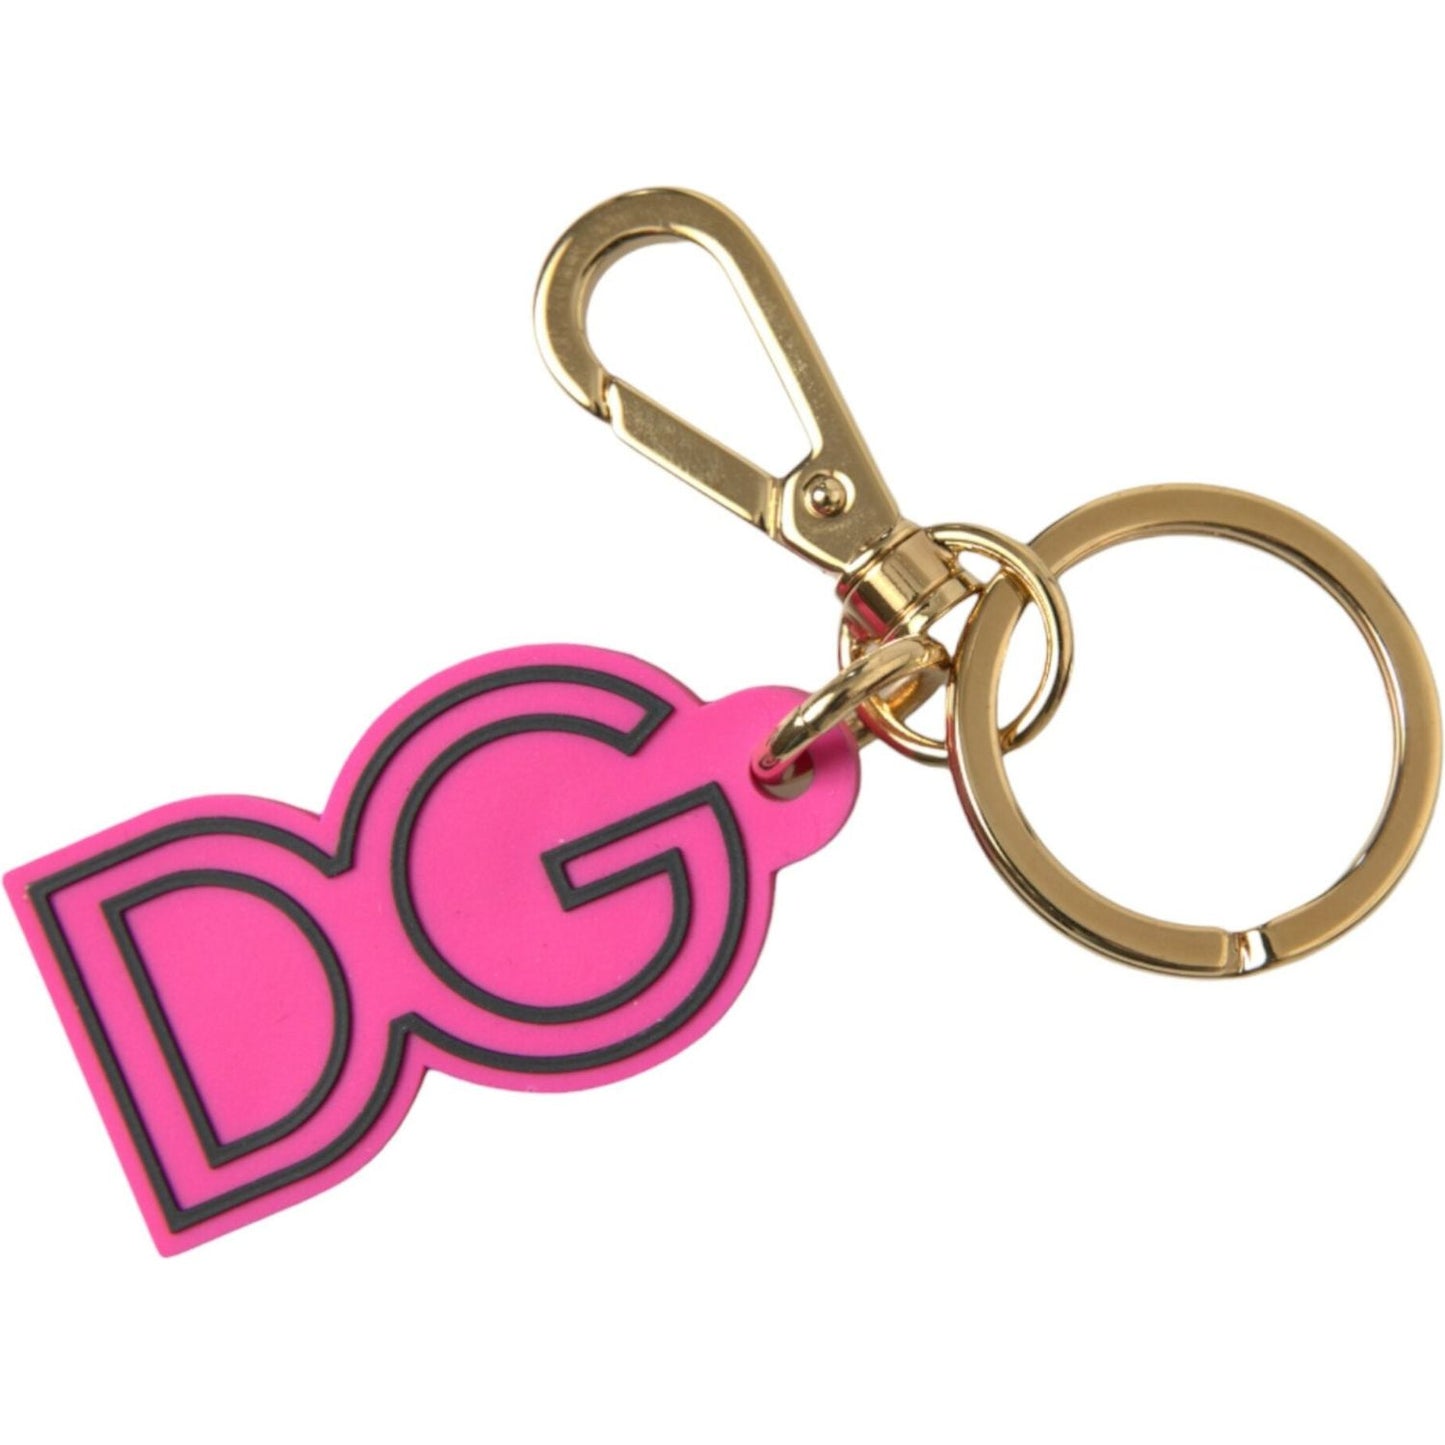 Dolce & GabbanaChic Gold and Pink Keychain EleganceMcRichard Designer Brands£139.00